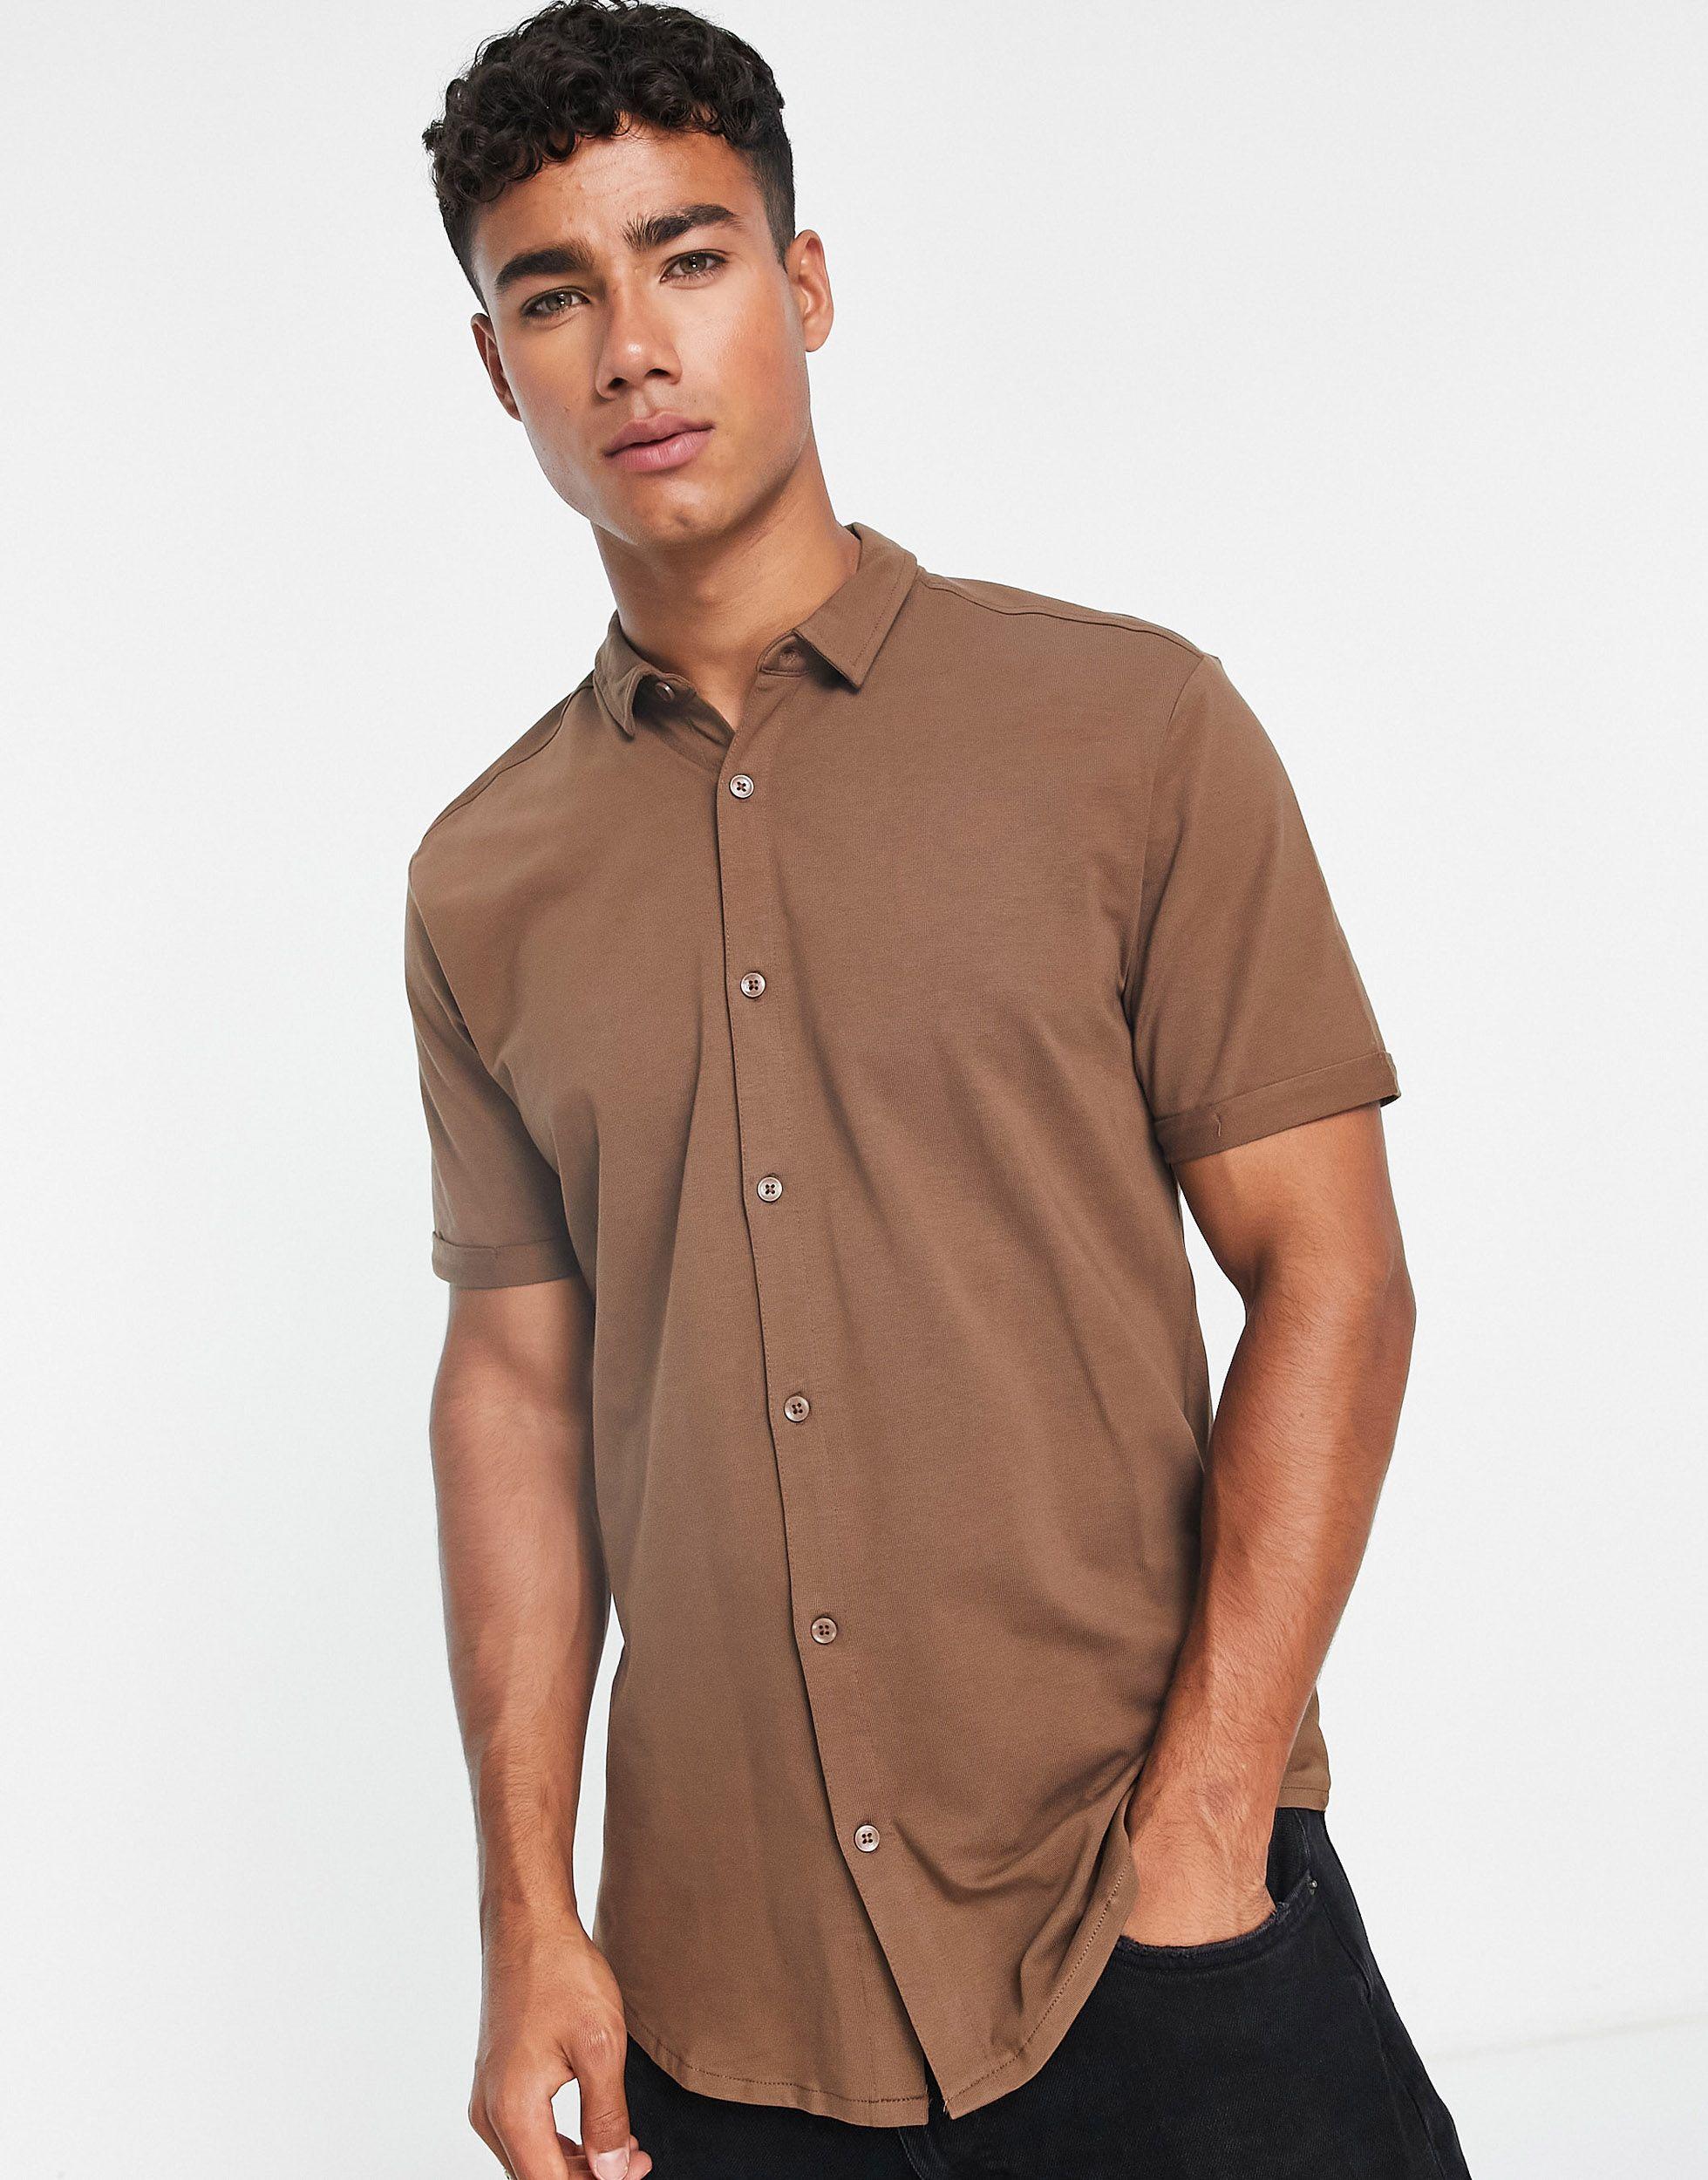 Camisa marrón chocolate ajustada New Look de hombre de color